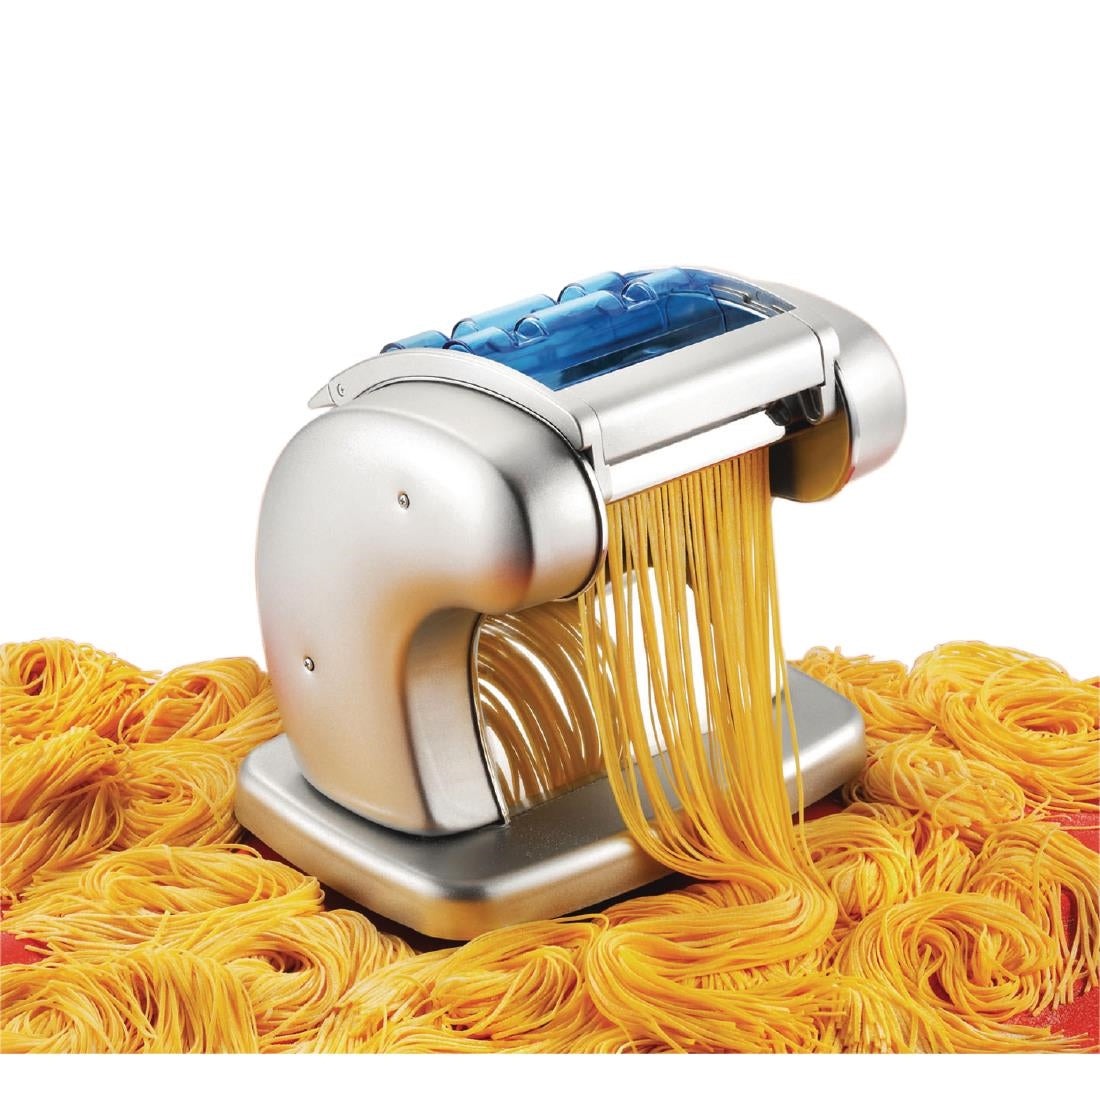 Imperia Pasta Presto Electric Pasta Machine JD Catering Equipment Solutions Ltd